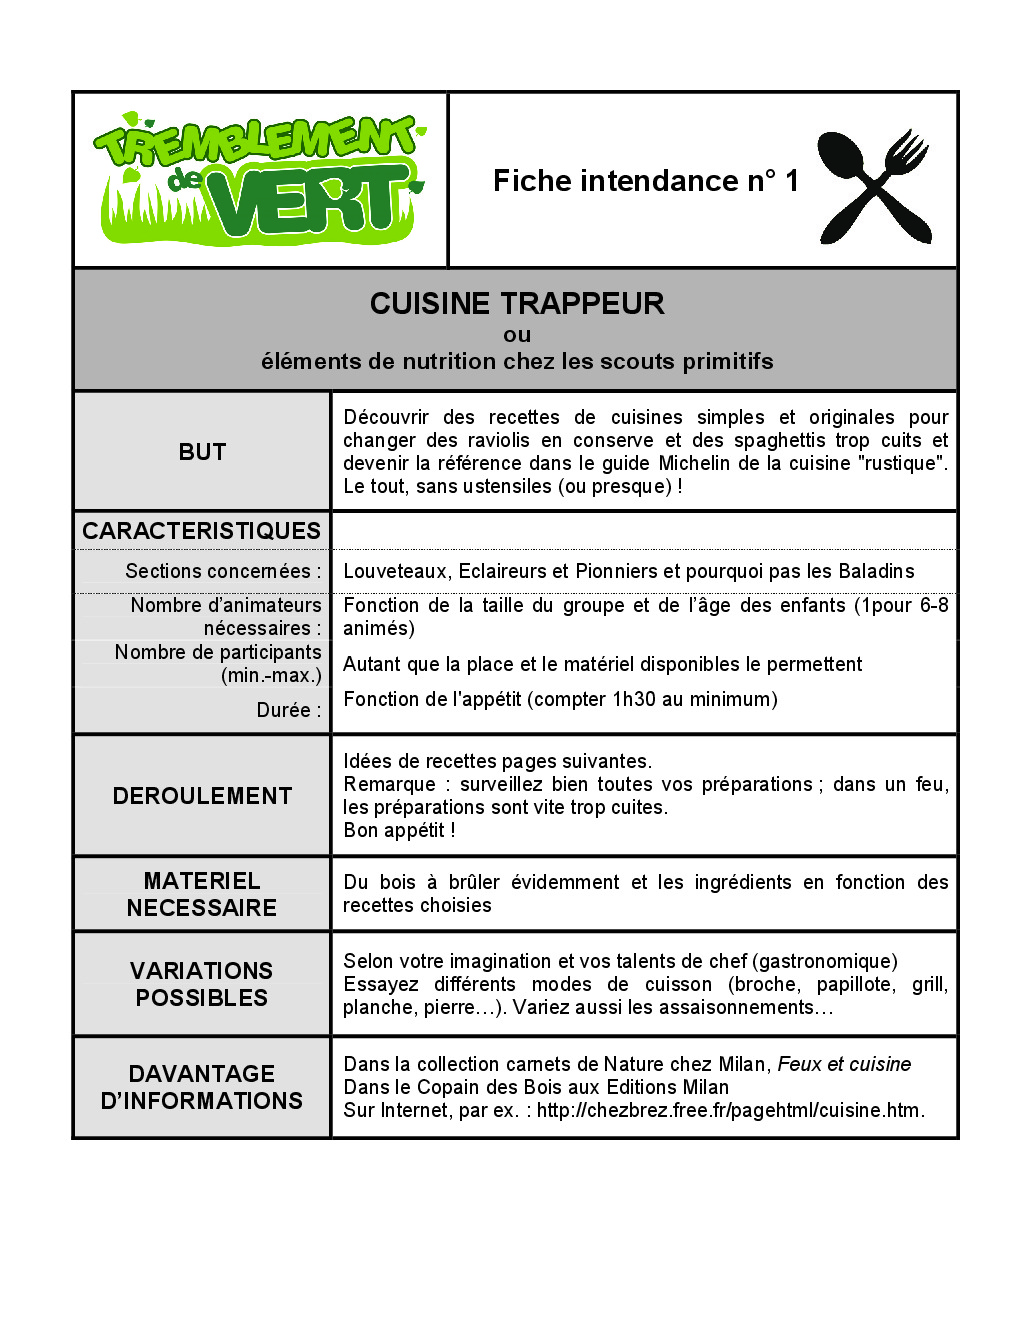 FT_TV_INT_01_cuisine_trappeur.pdf